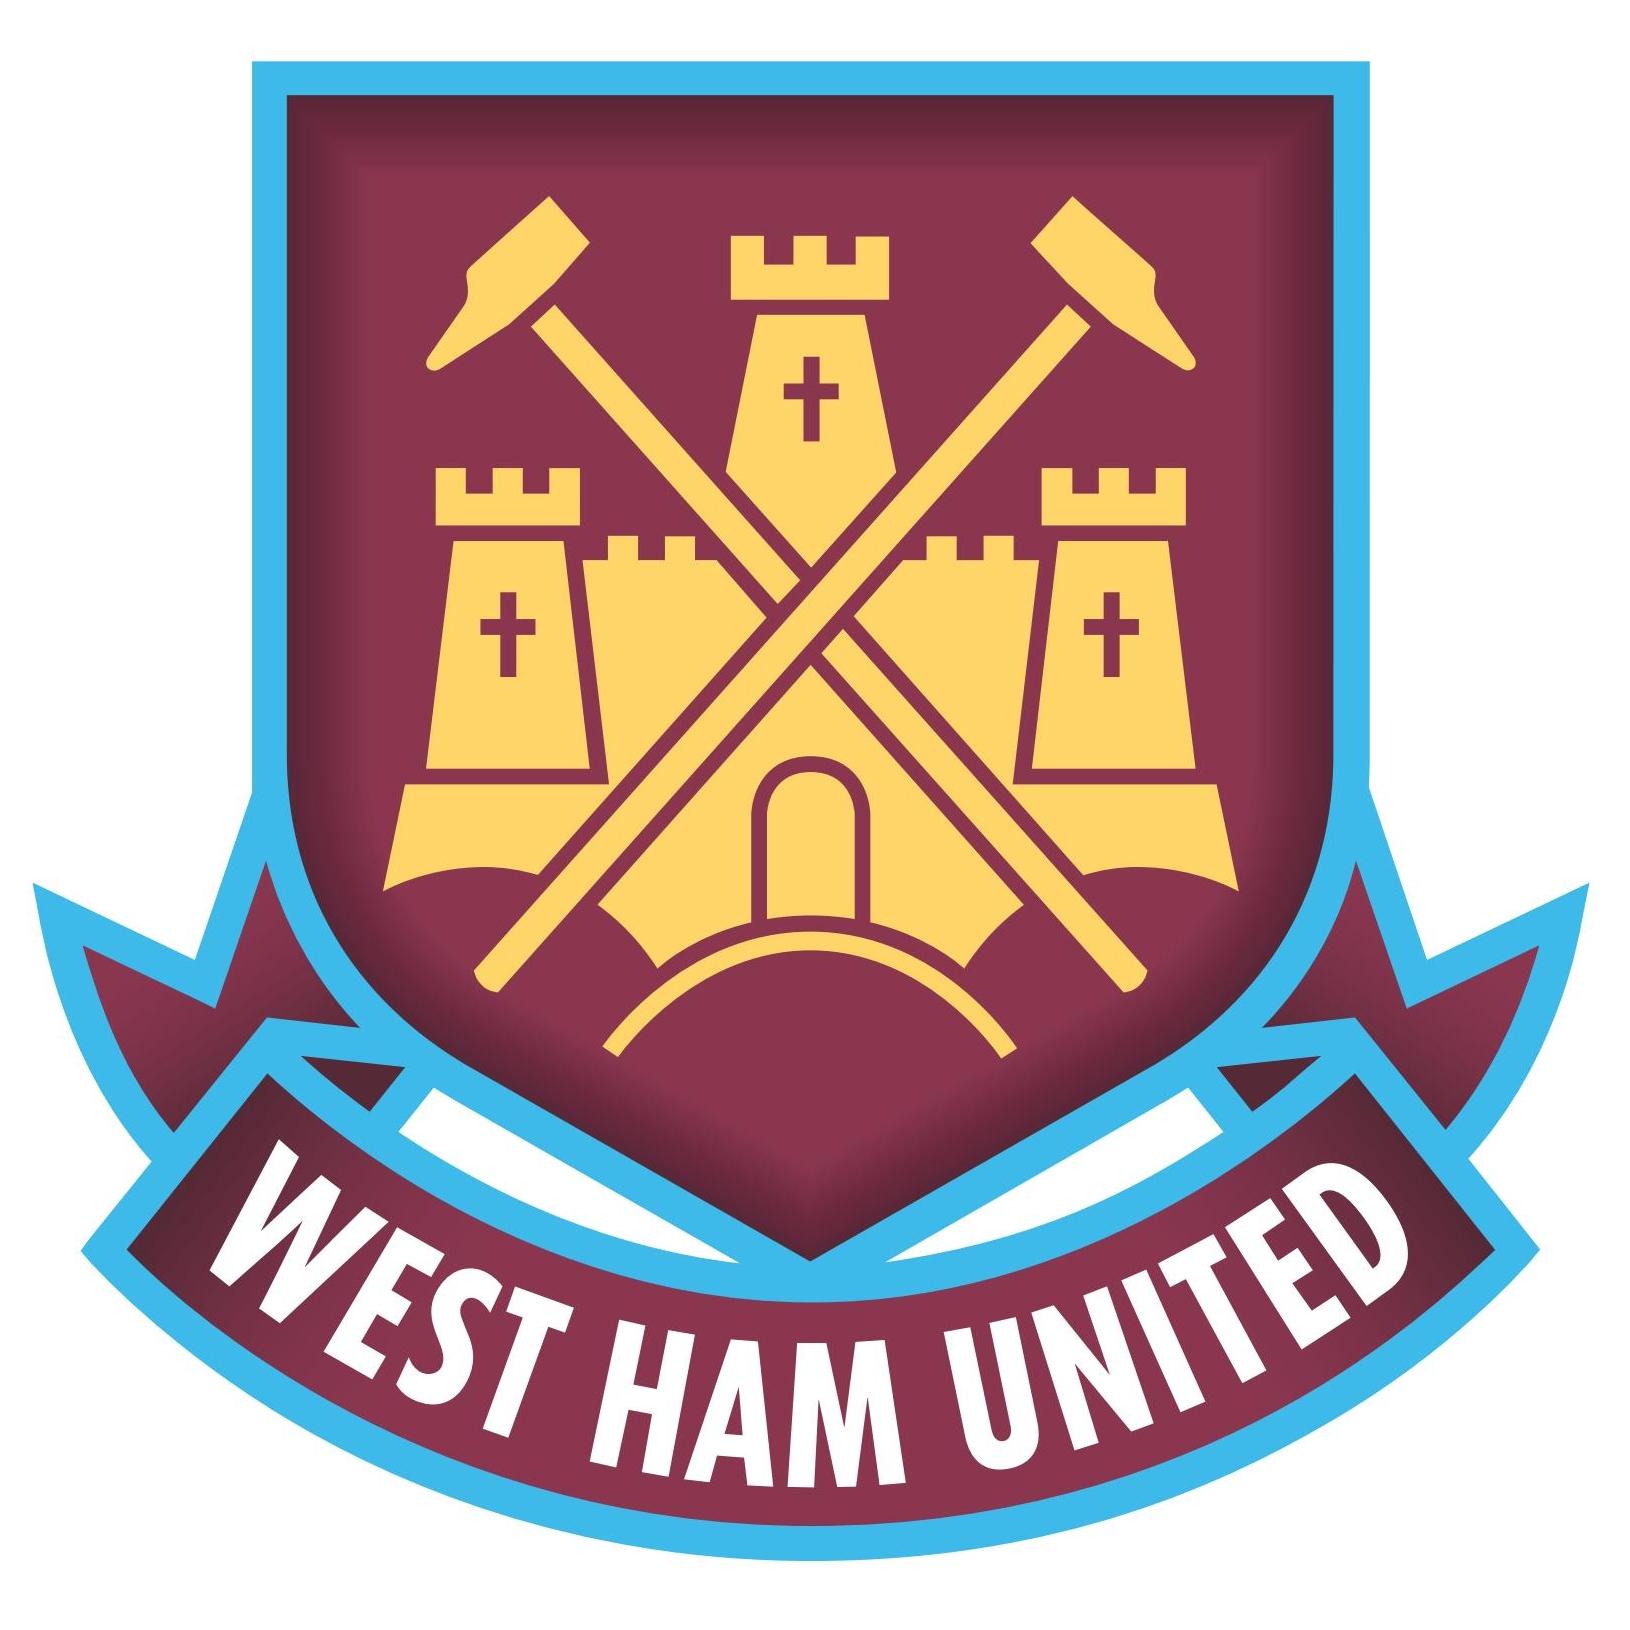 West Ham United Football Club Logo